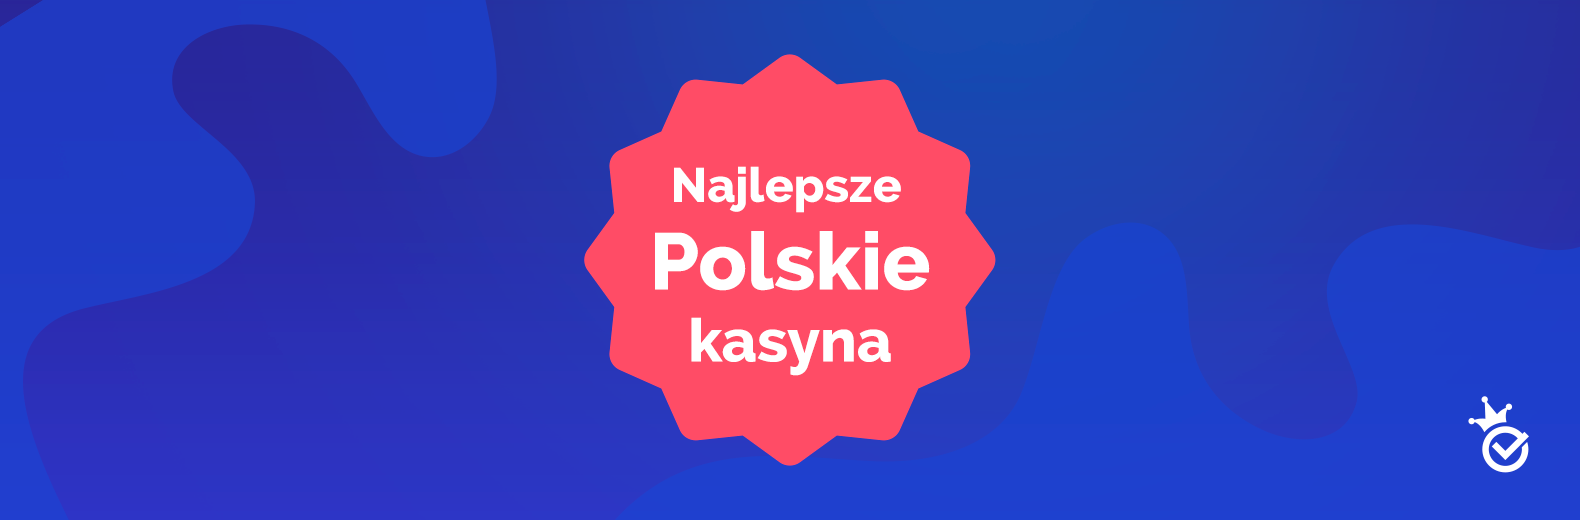 Korzystanie z 7 strategii kasyno online polski podobnych do profesjonalistów